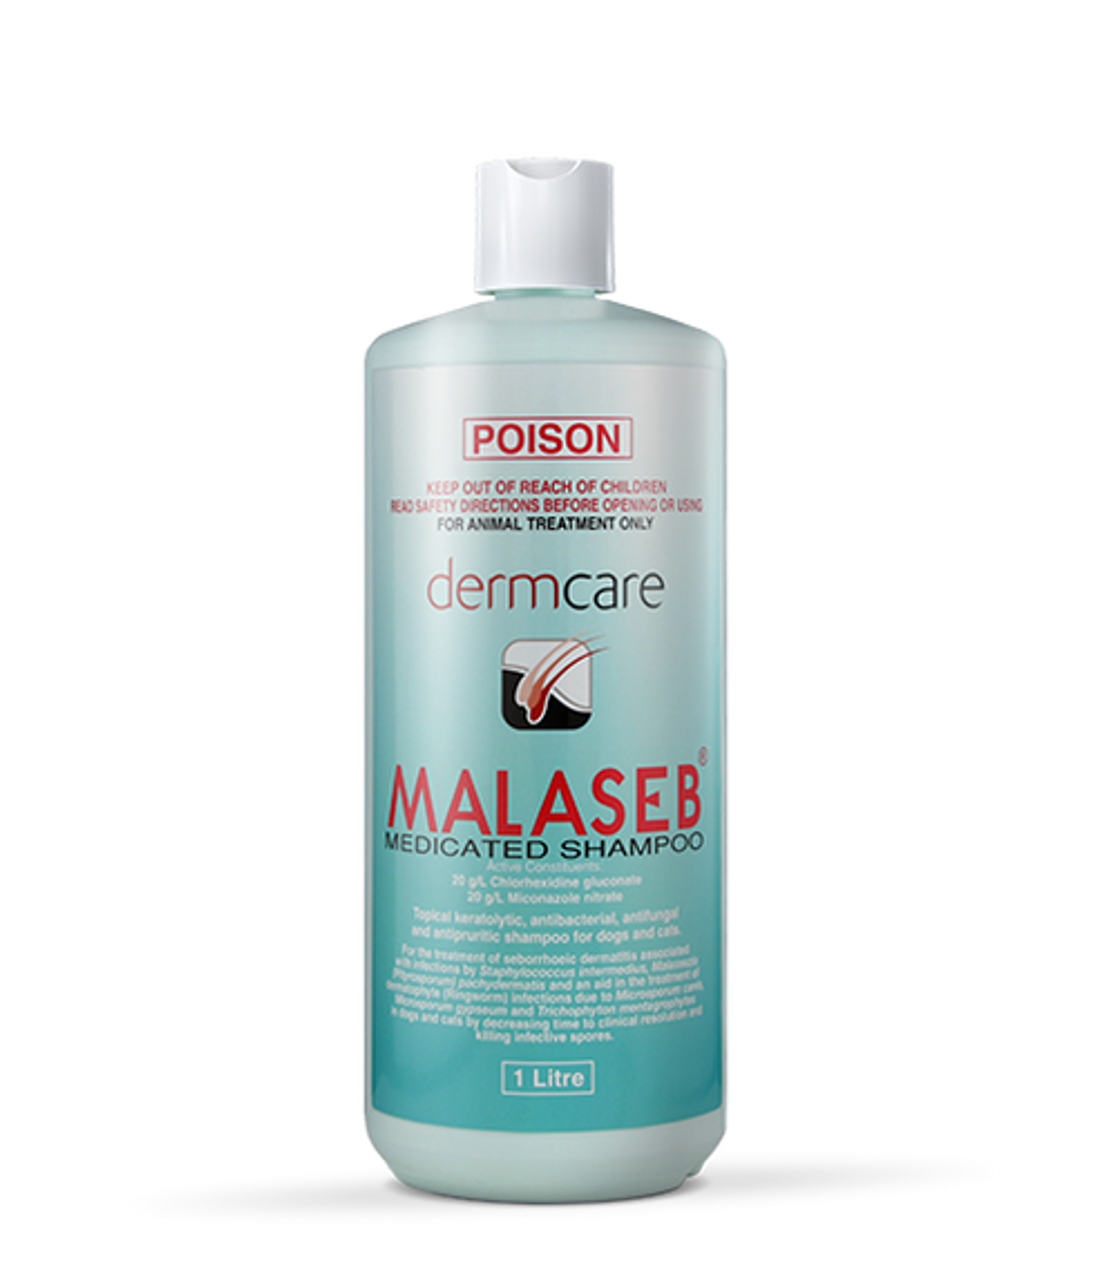 20% di sconto su Malaseb Shampoo 1 litro (33.8 fl oz) presso Atlantic Pet Products